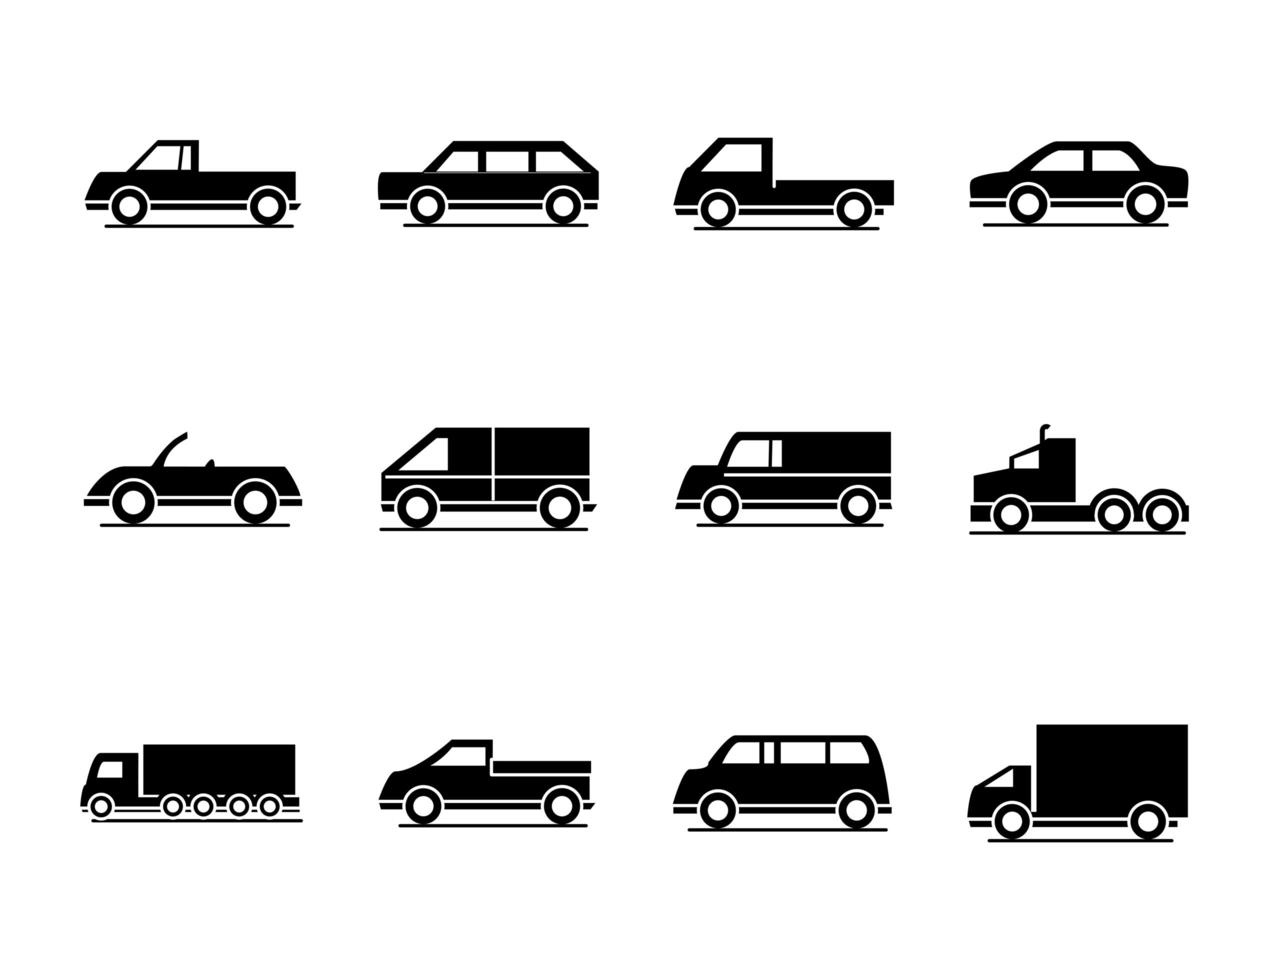 modèle de voiture camion conteneur ramassage conteneur transport véhicule silhouette style icônes scénographie vecteur